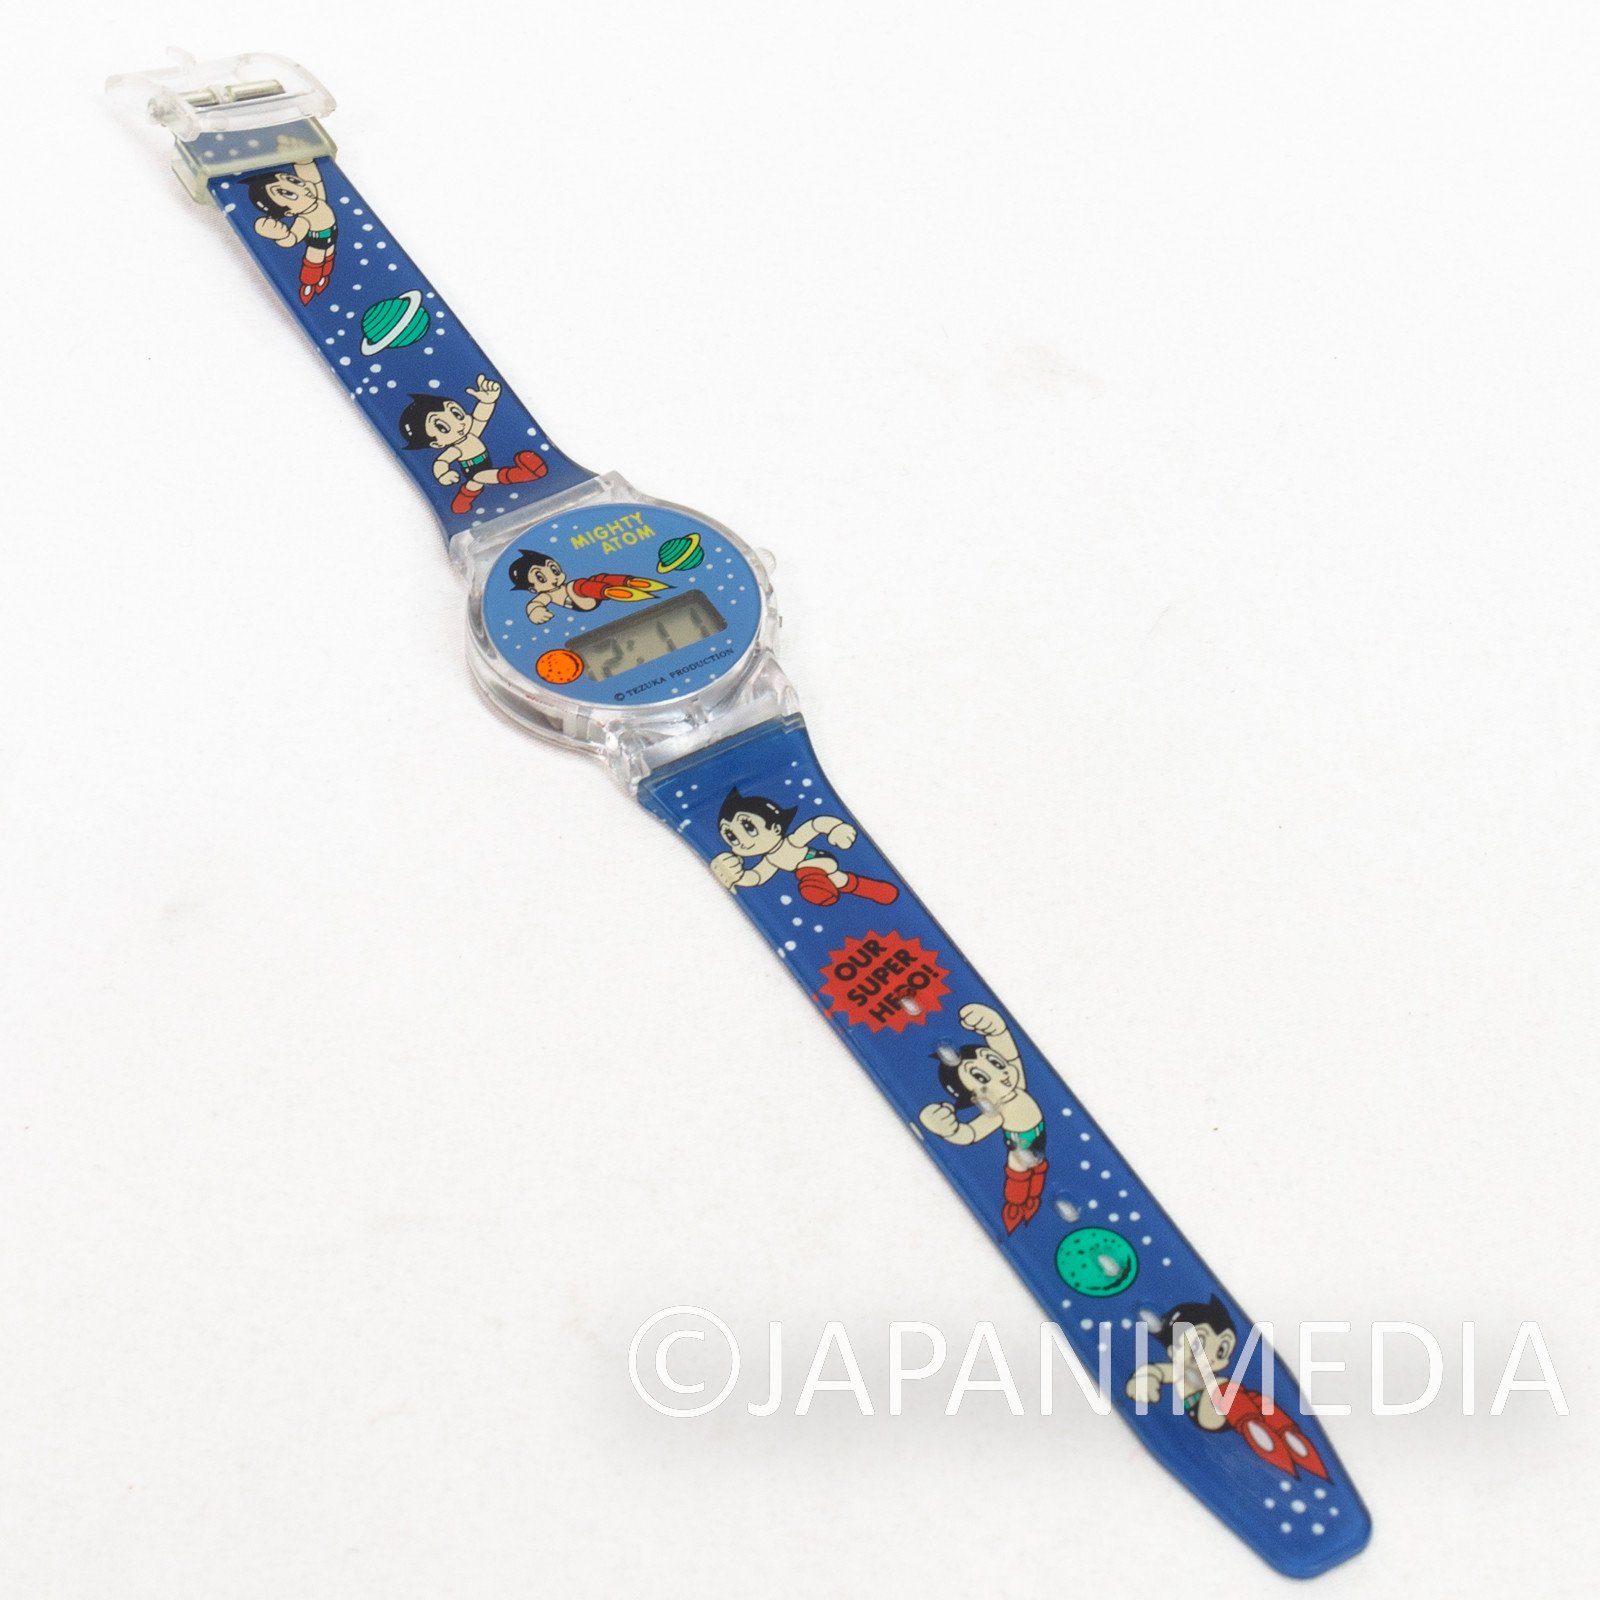 Retro Astro Boy Atom Digital Wrist Watch / Osamu Tezuka